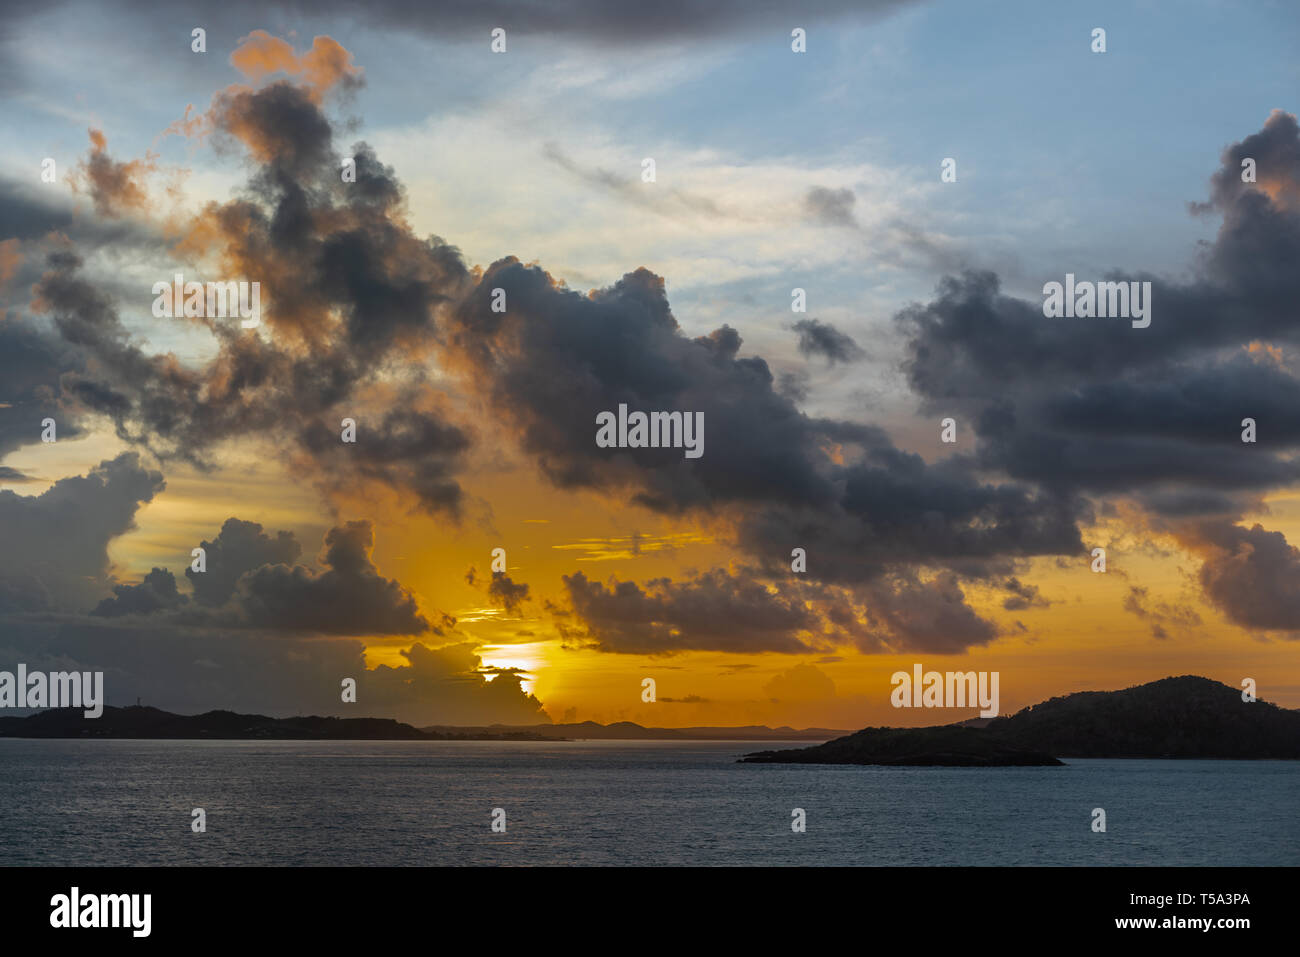 L'île Thursday, Australie - 20 Février 2019 : Sunrise tourné sur l'archipel des îles du détroit de Torres montre les nuages bleu foncé dans la lumière jaune et rouge han Banque D'Images